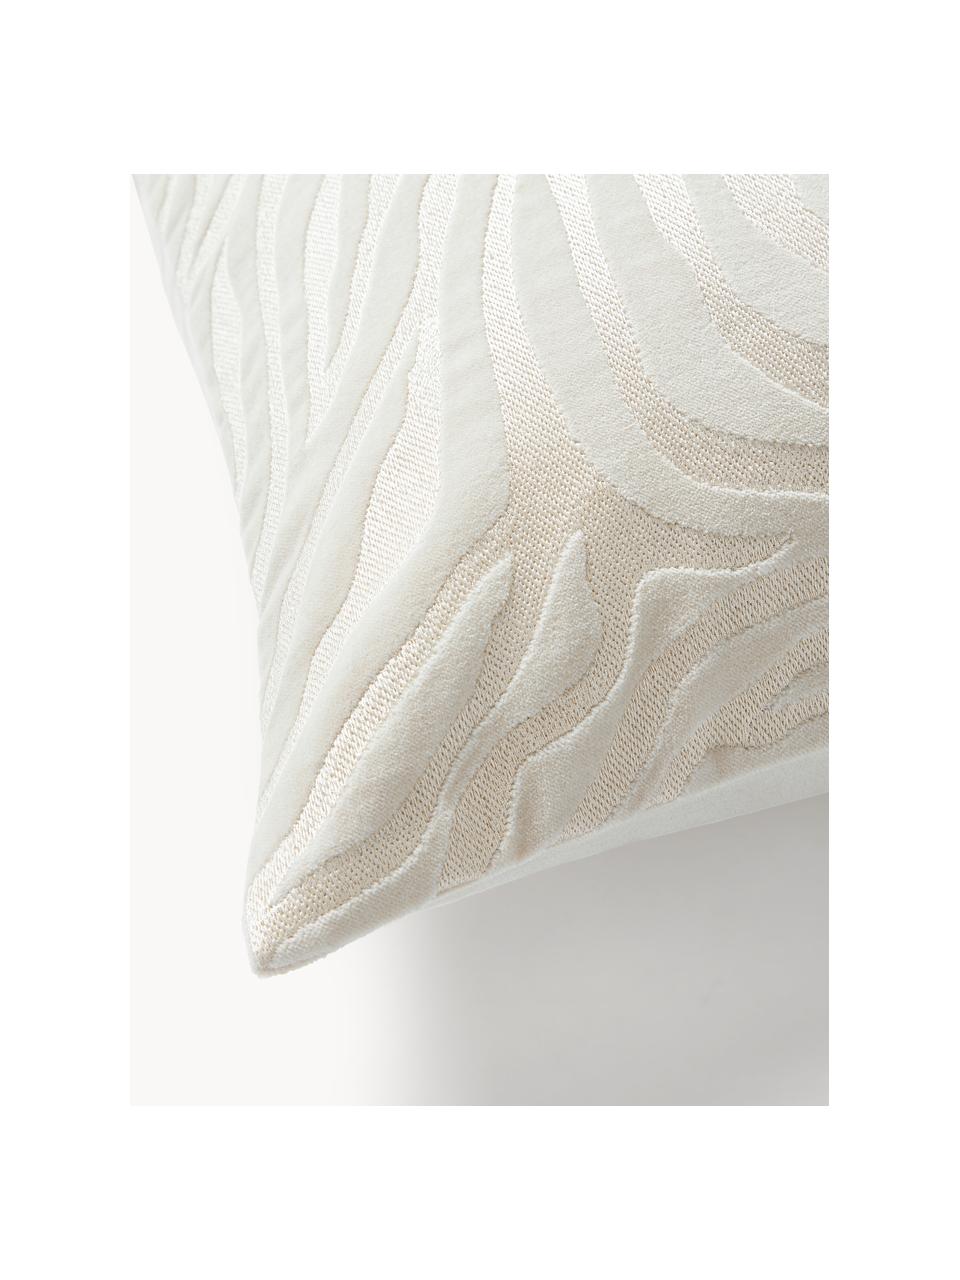 Copricuscino in velluto Wilda, Tonalità bianco crema, Larg. 50 x Lung. 50 cm